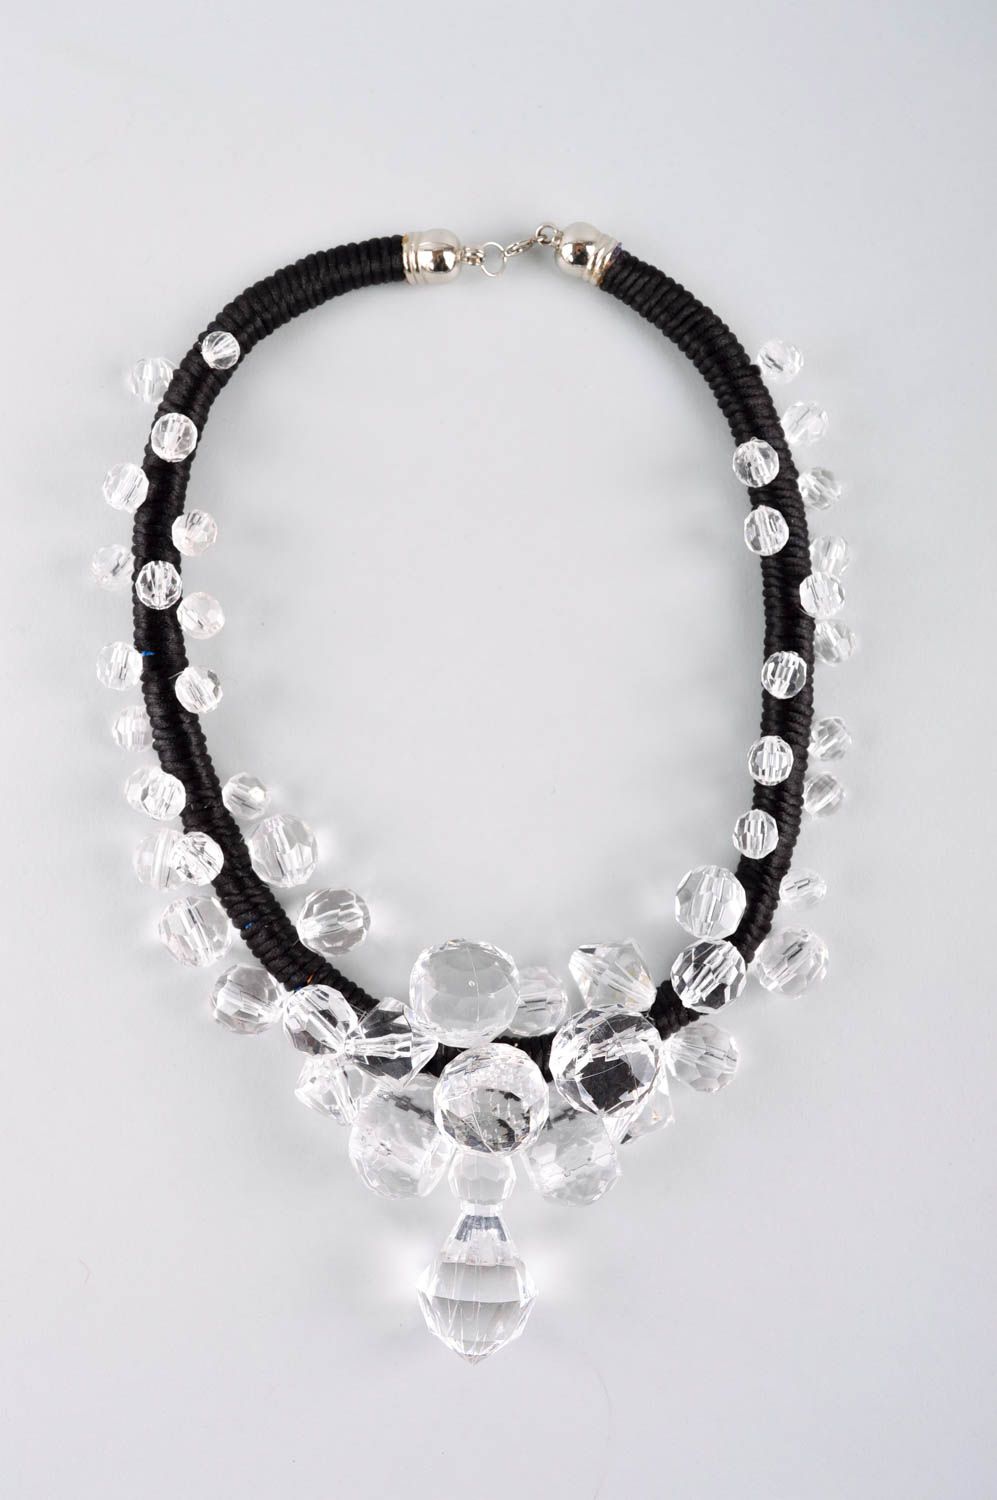 Handmade stylish cute necklace beaded textile necklace elegant jewelry photo 2